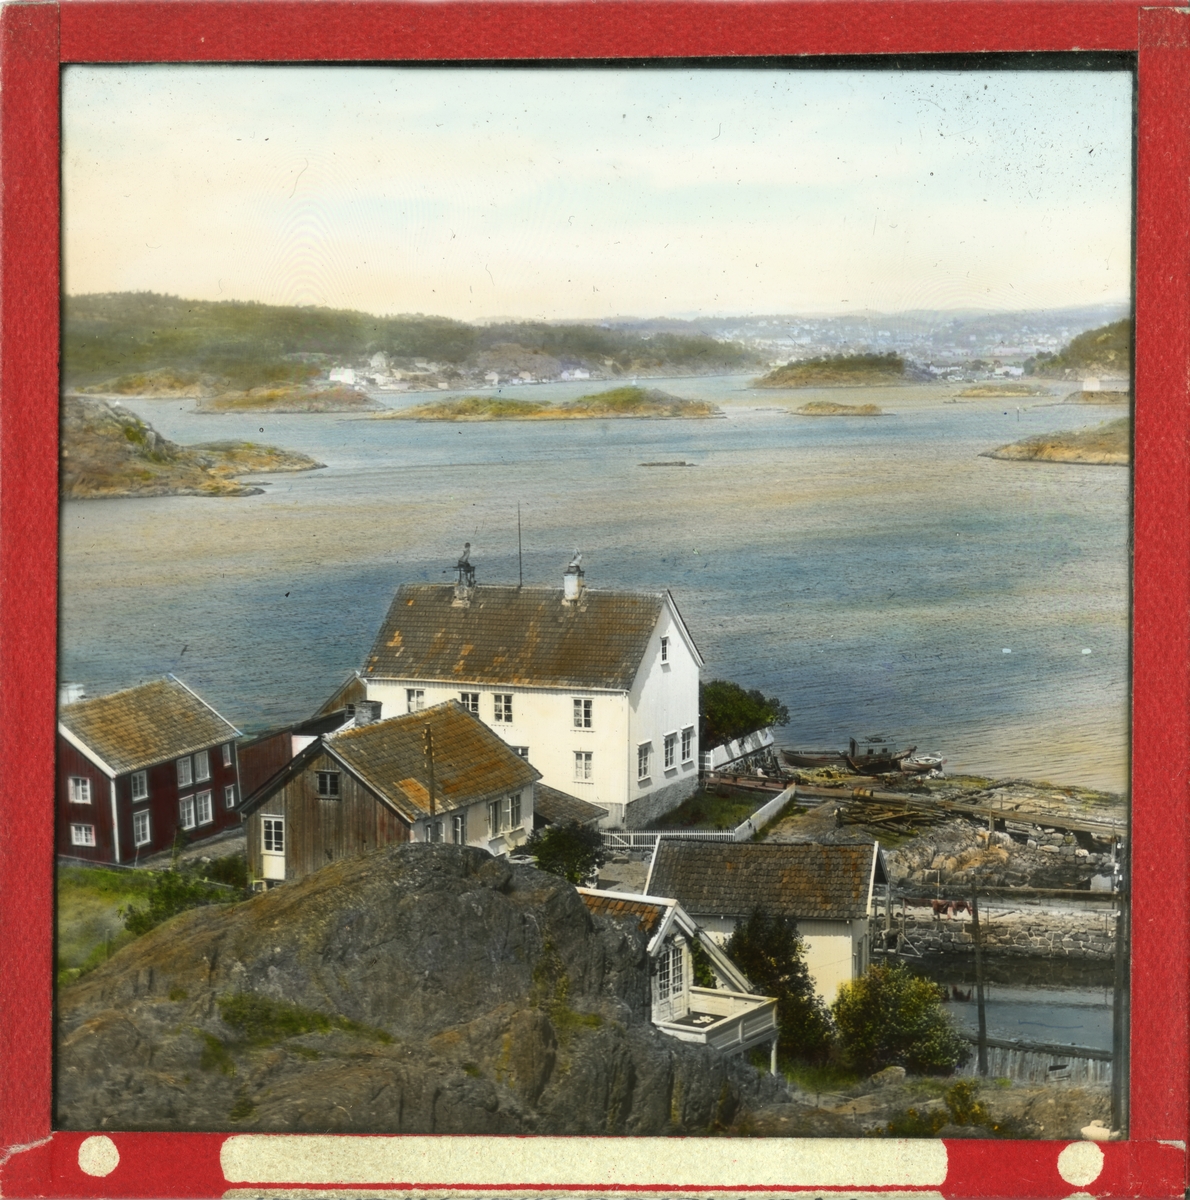 Håndkolorert dias. Utsikt fra Merdø mot Arendal. En husklynge med våningshus, bryggerhus og båthus ligger ved vannkanten.